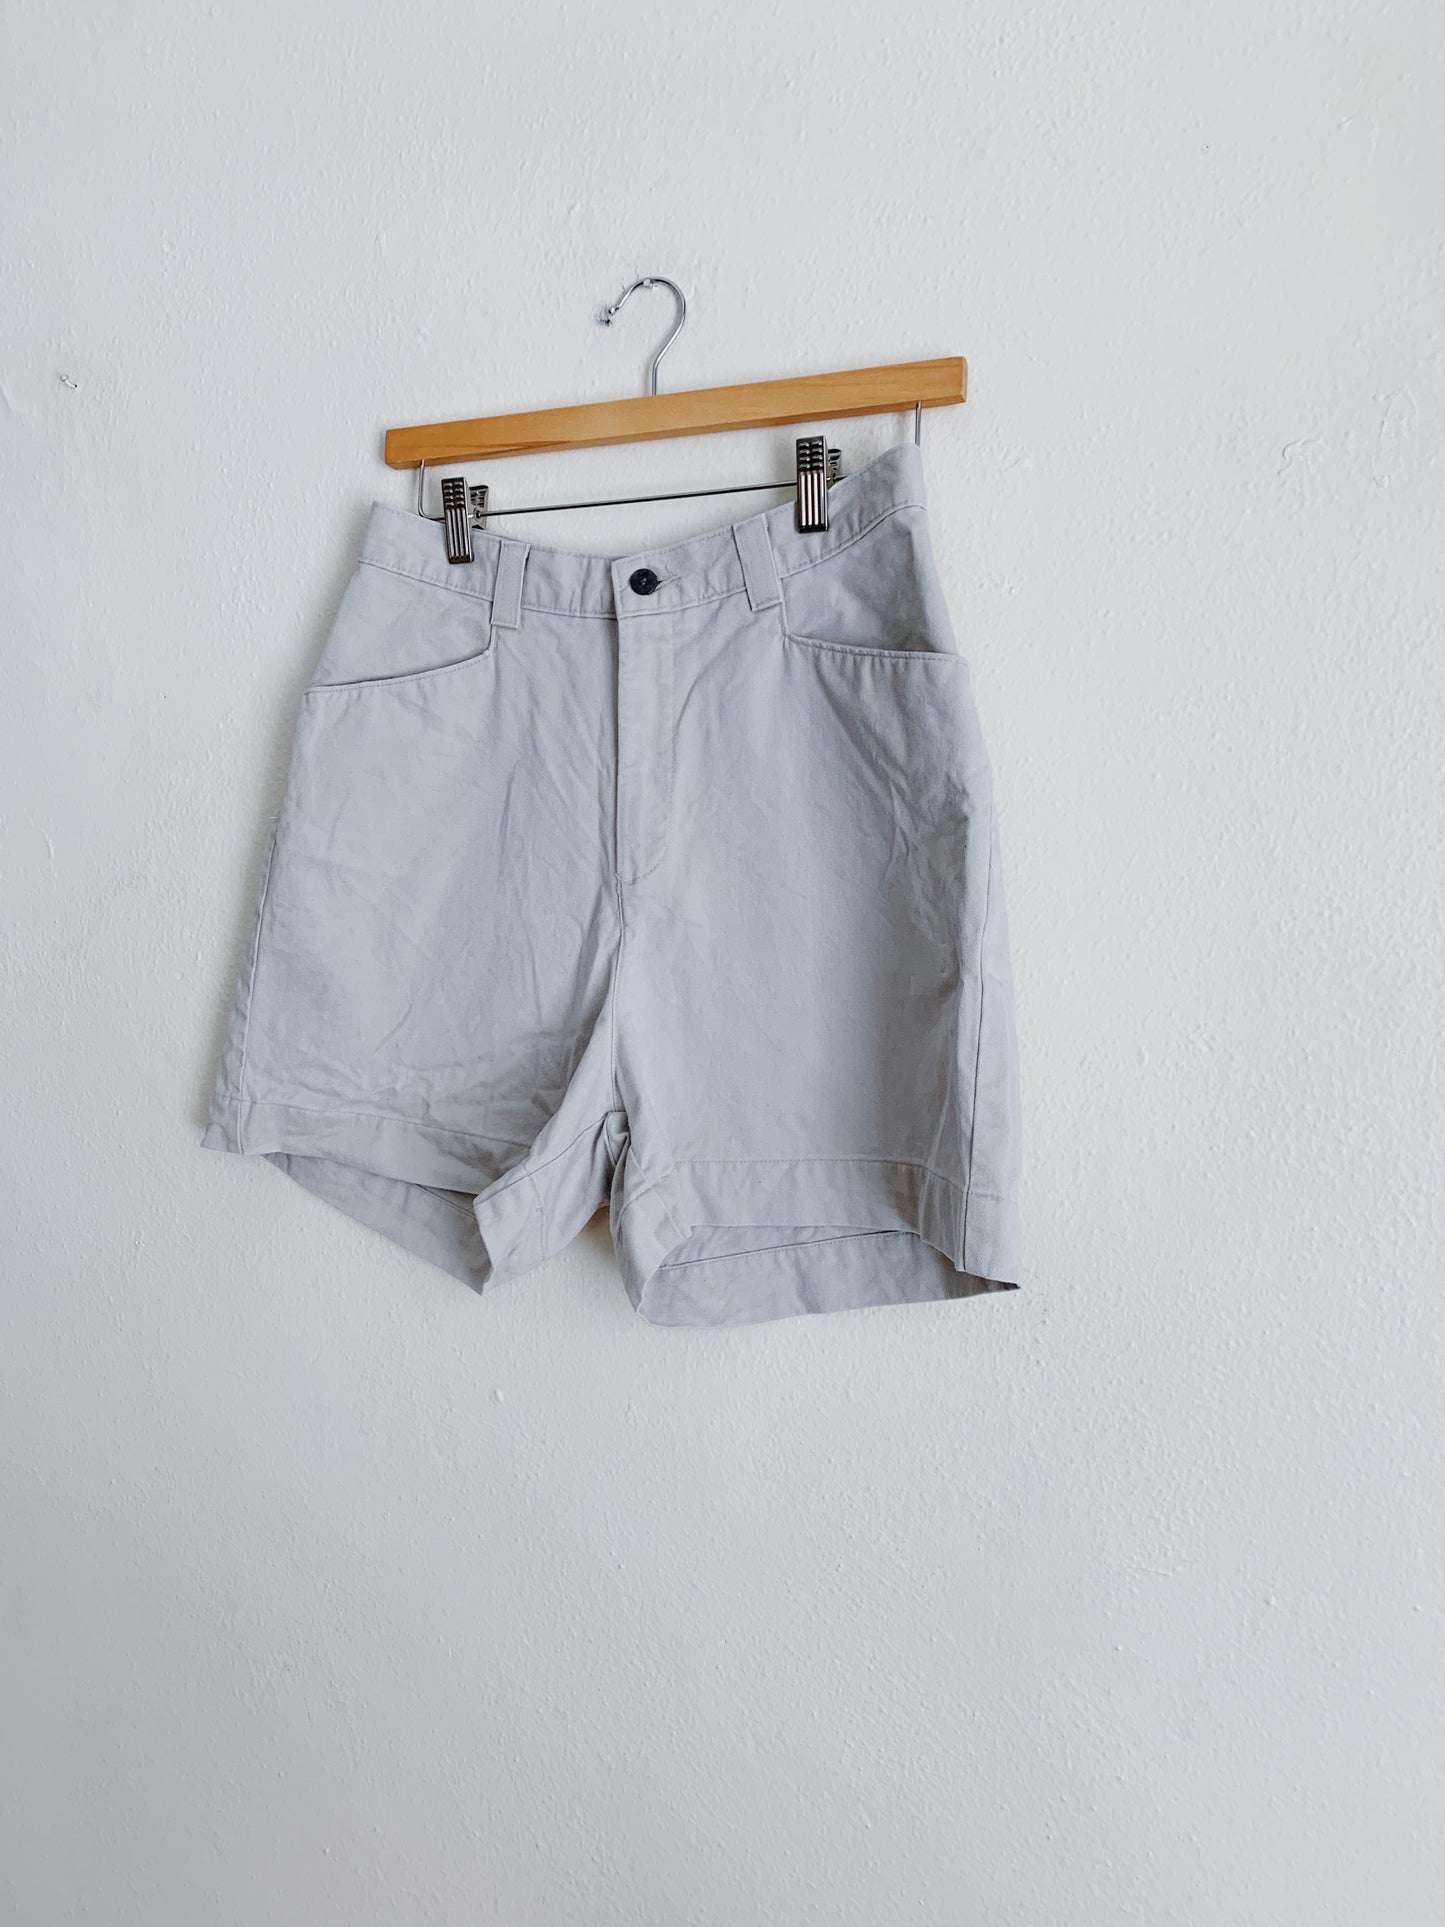 Vintage Lee Khaki Shorts (26x4)